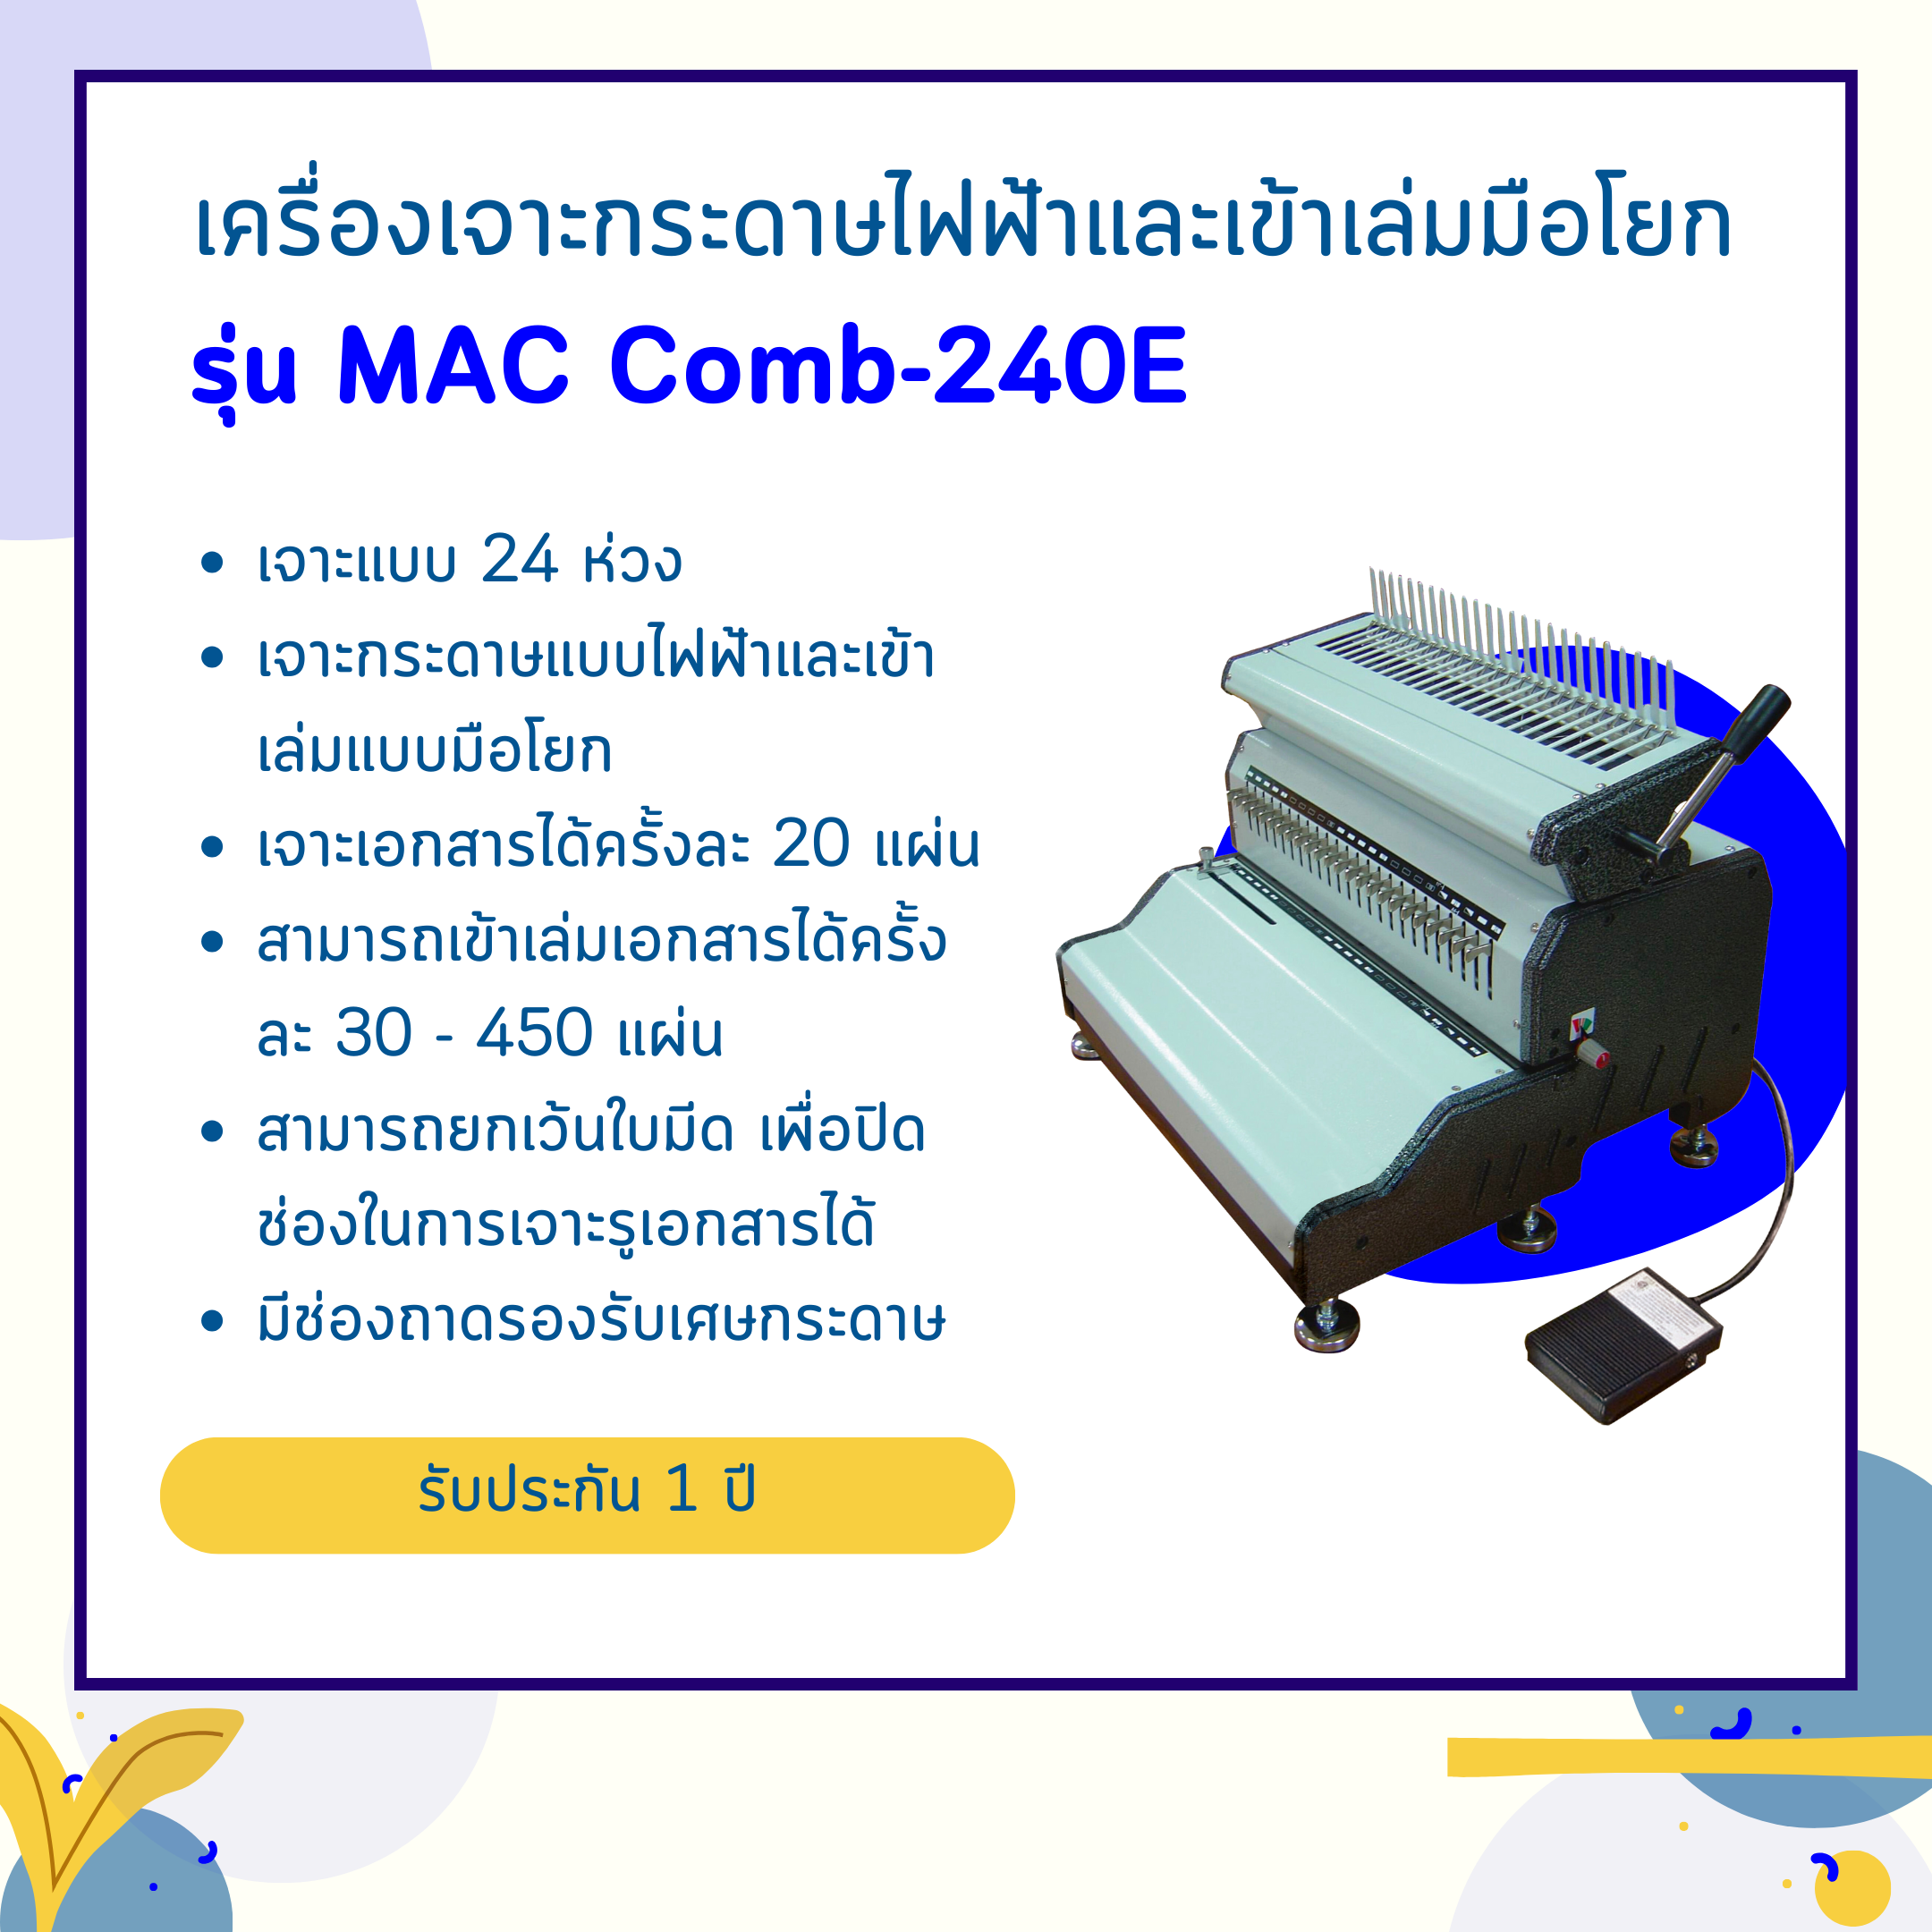 เครื่องเจาะกระดาษไฟฟ้าและเข้าเล่มมือโยก รุ่น Mac comb240E (เจาะ 24 รู)